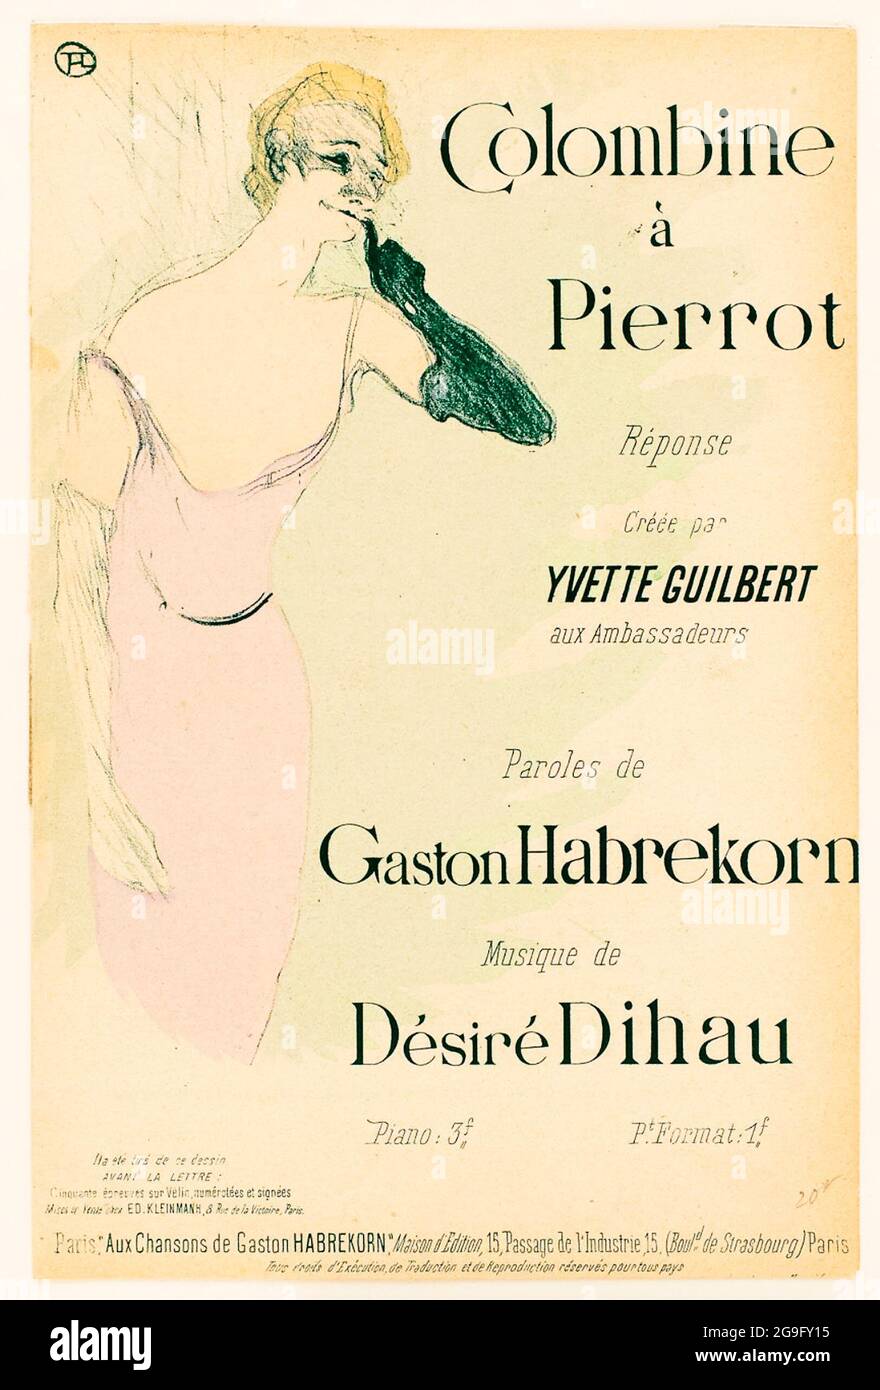 Henri de Toulouse-Lautrec, Yvette Guilbert, dans, Colombine à Pierrot,  poster, 1894 Foto stock - Alamy